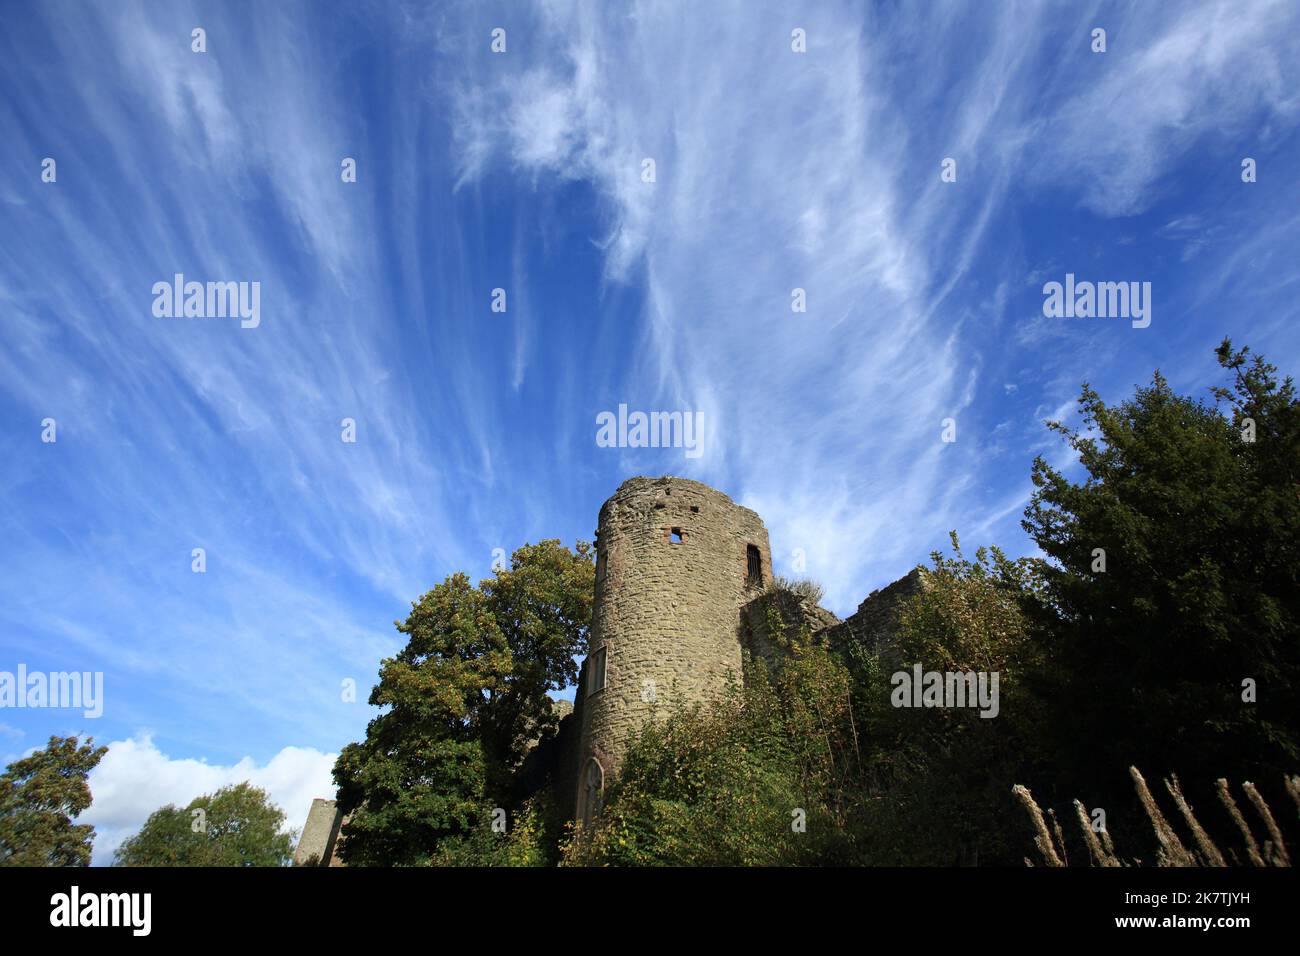 Ludlow castle walls, Ludlow, Shropshire, England, UK. Stock Photo